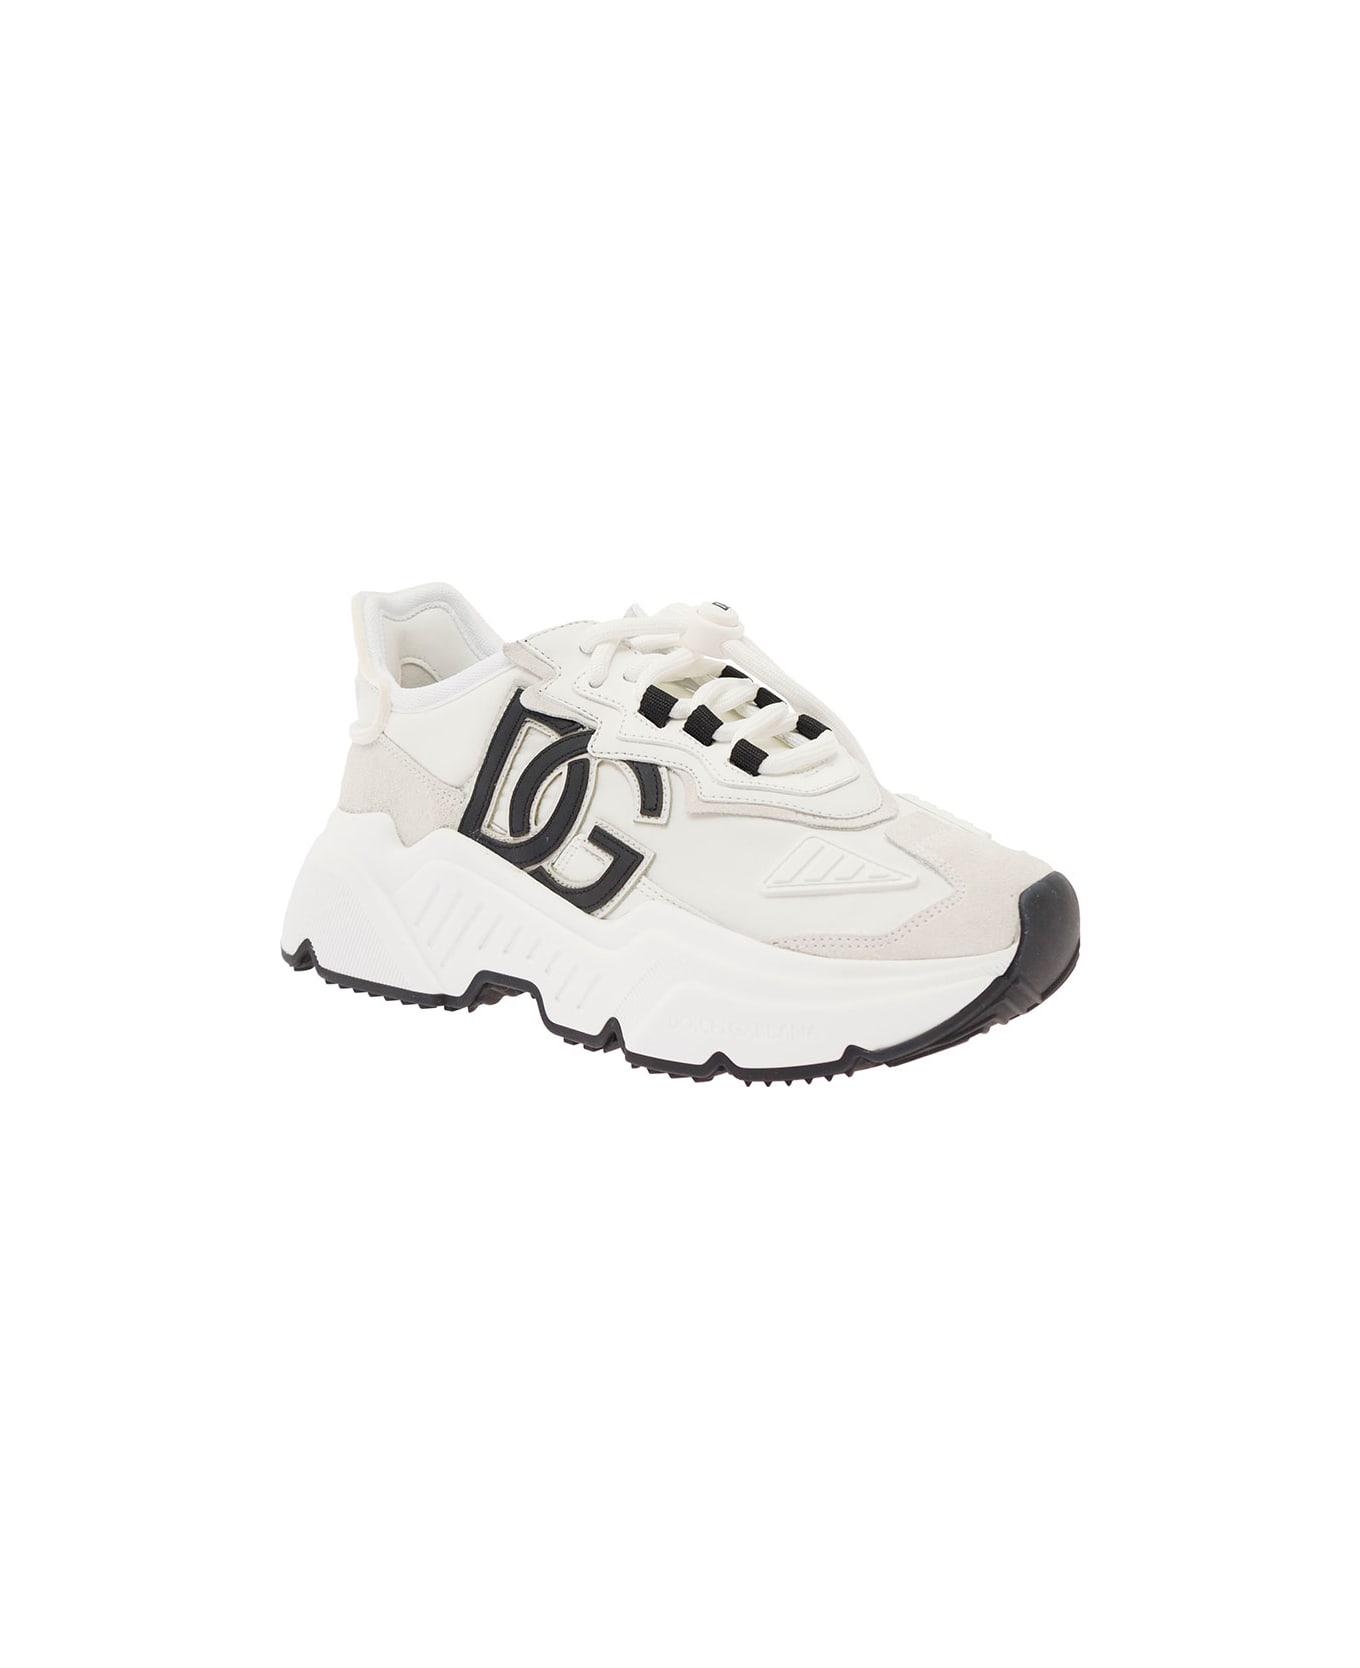 Dolce & Gabbana Daymaster Sneaker - White/black